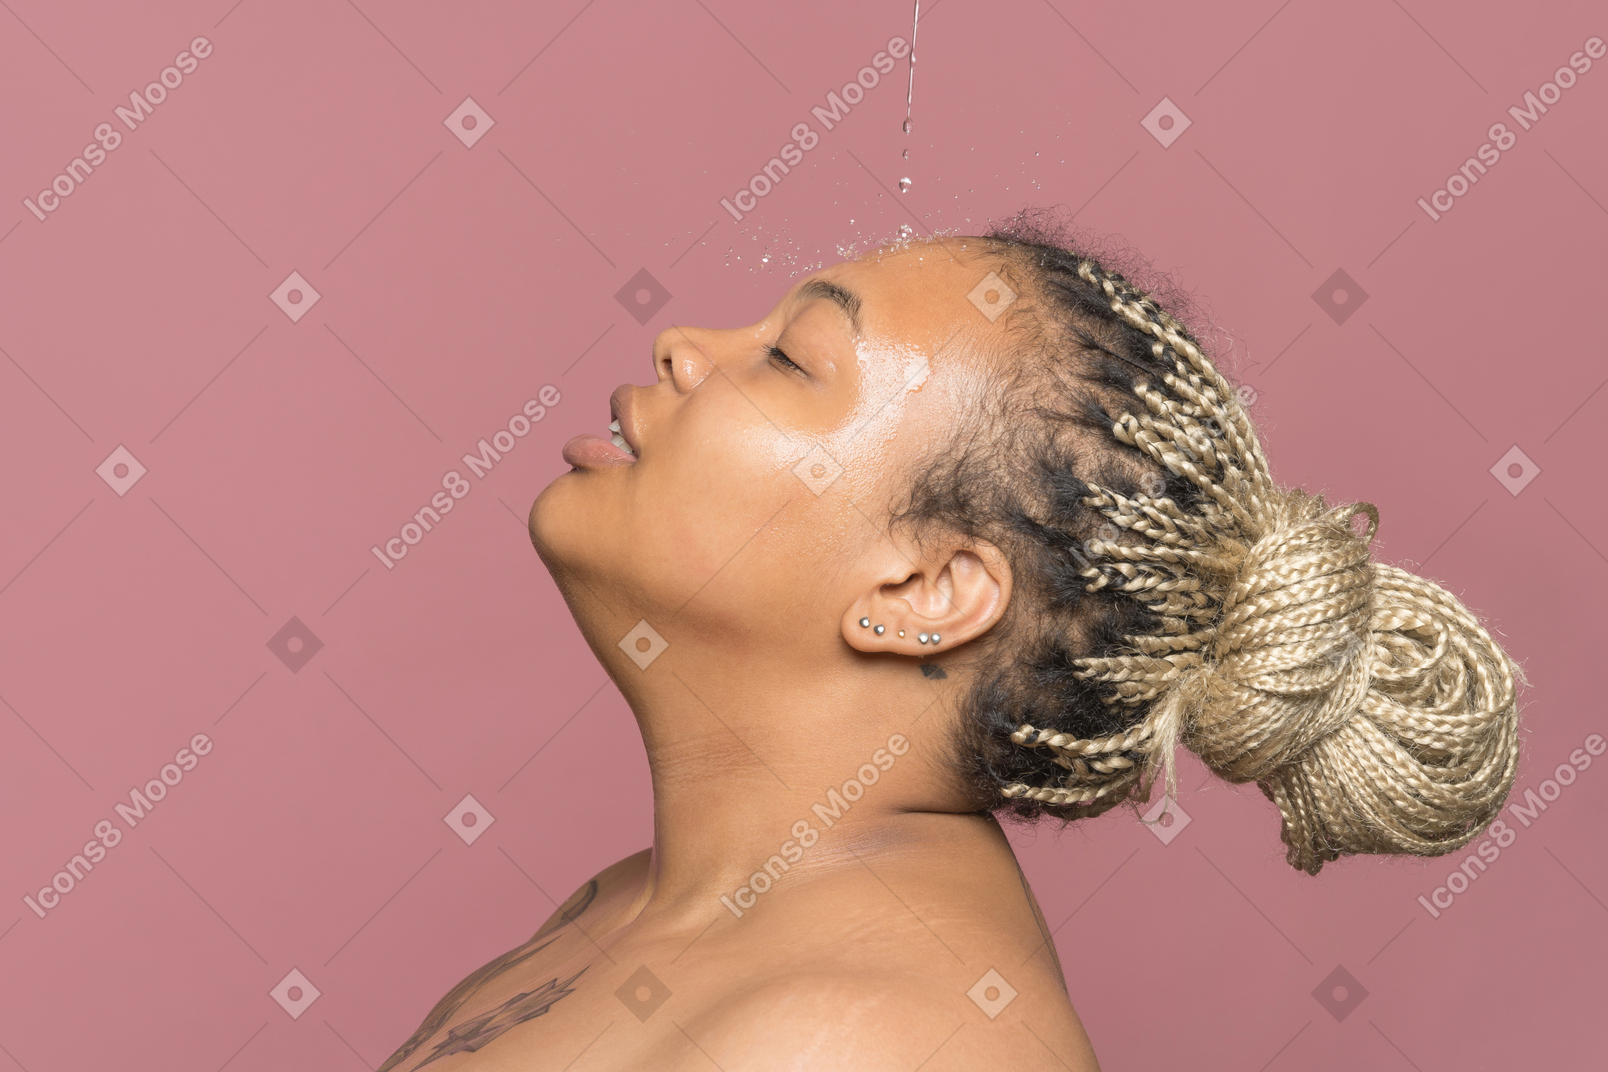 Beautiful shirtless afro woman taking shower